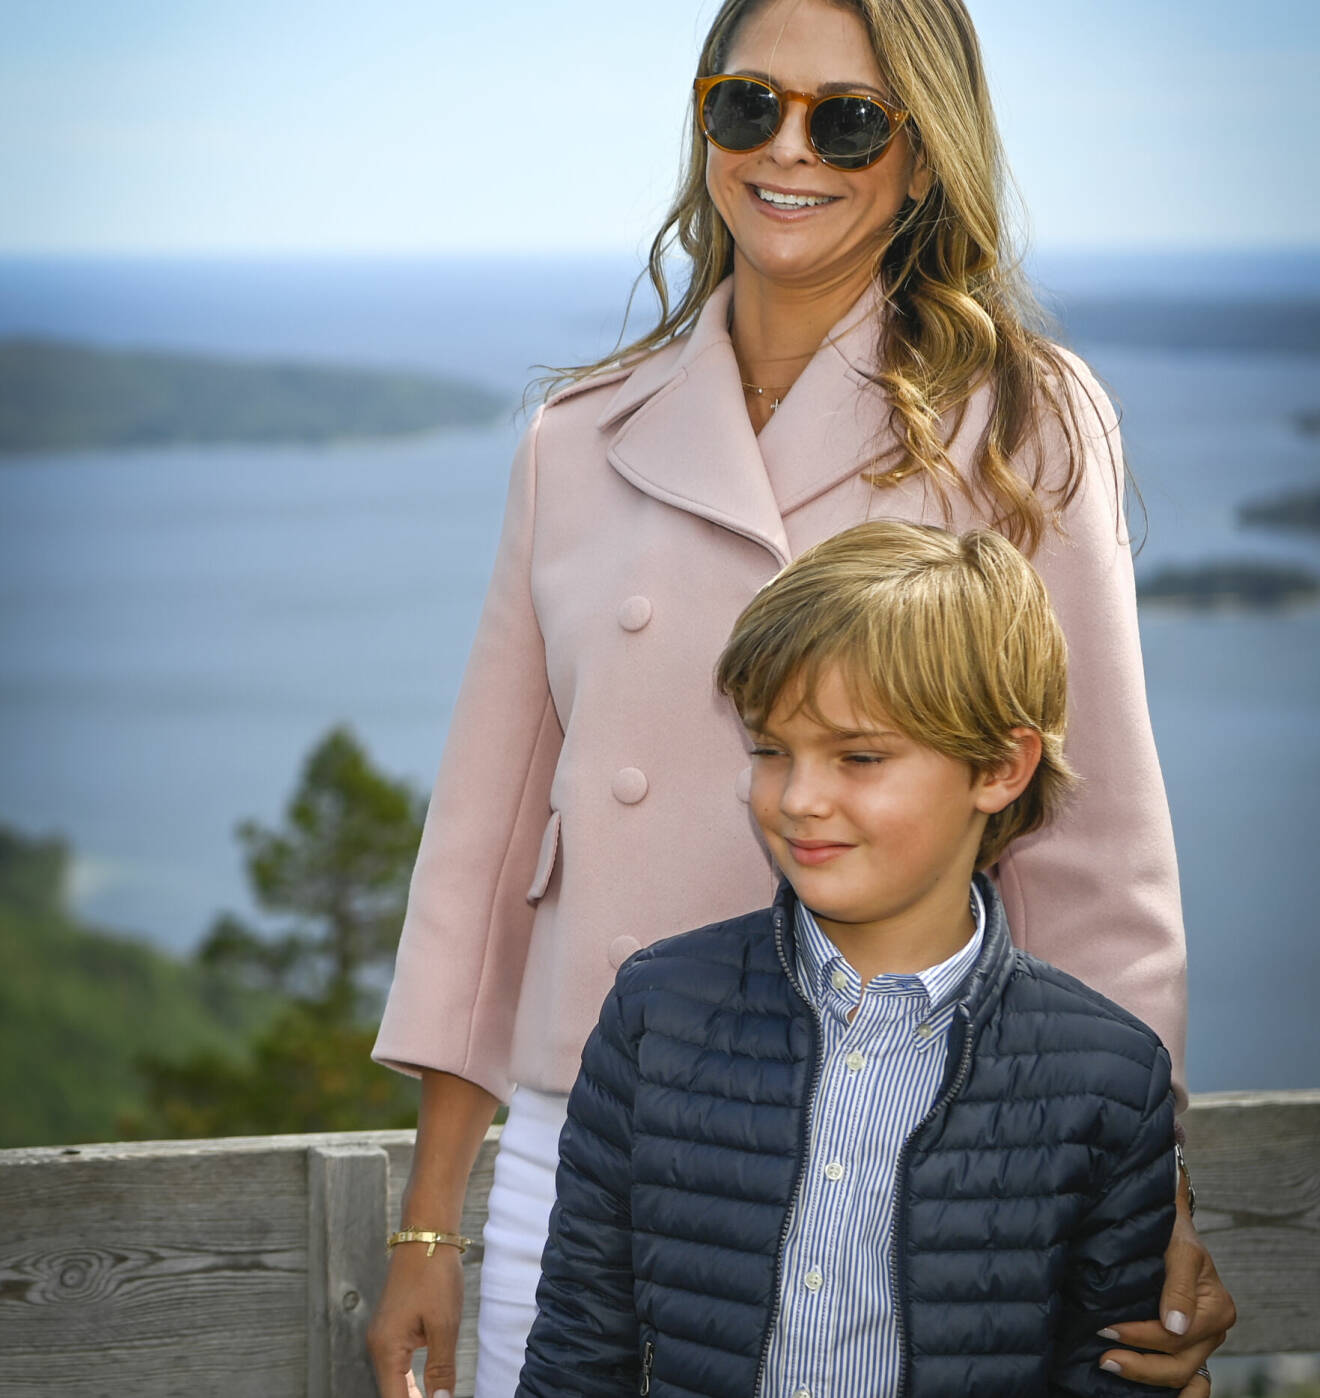 Prins Nicolas på besök i sitt hertigdöme Ångermanland, här med prinsessan Madeleine